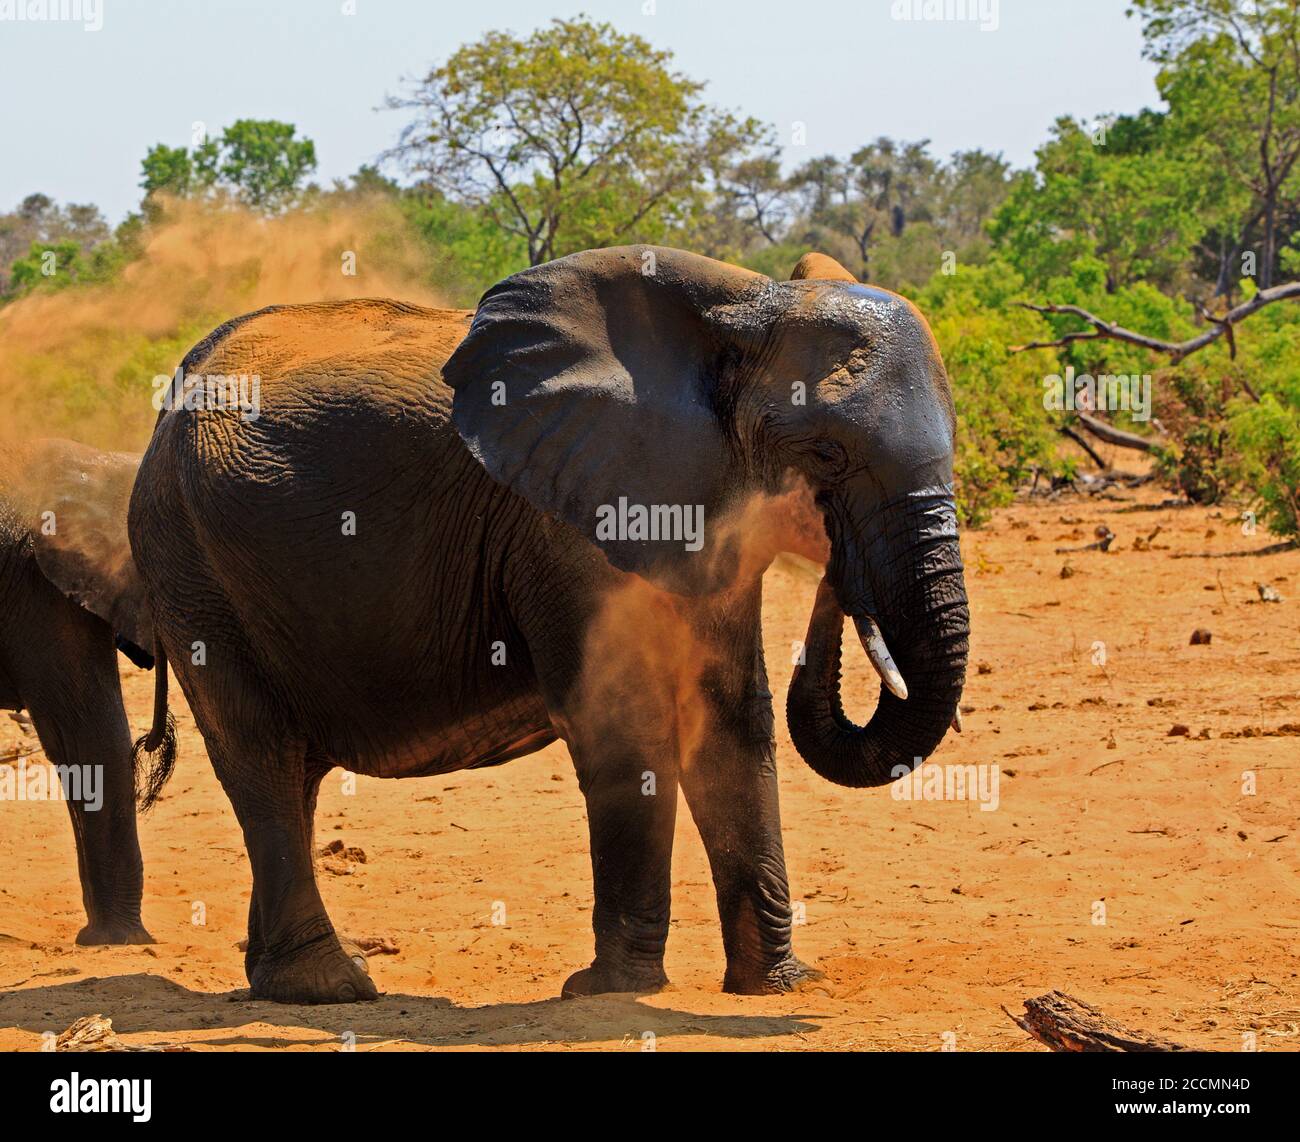 Grande elefante africano che soffia polvere su se stesso, gli elefanti fanno questo per proteggere la loro pelle dal sole africano bruciante. Hwange National Park, Zimbabwe Foto Stock